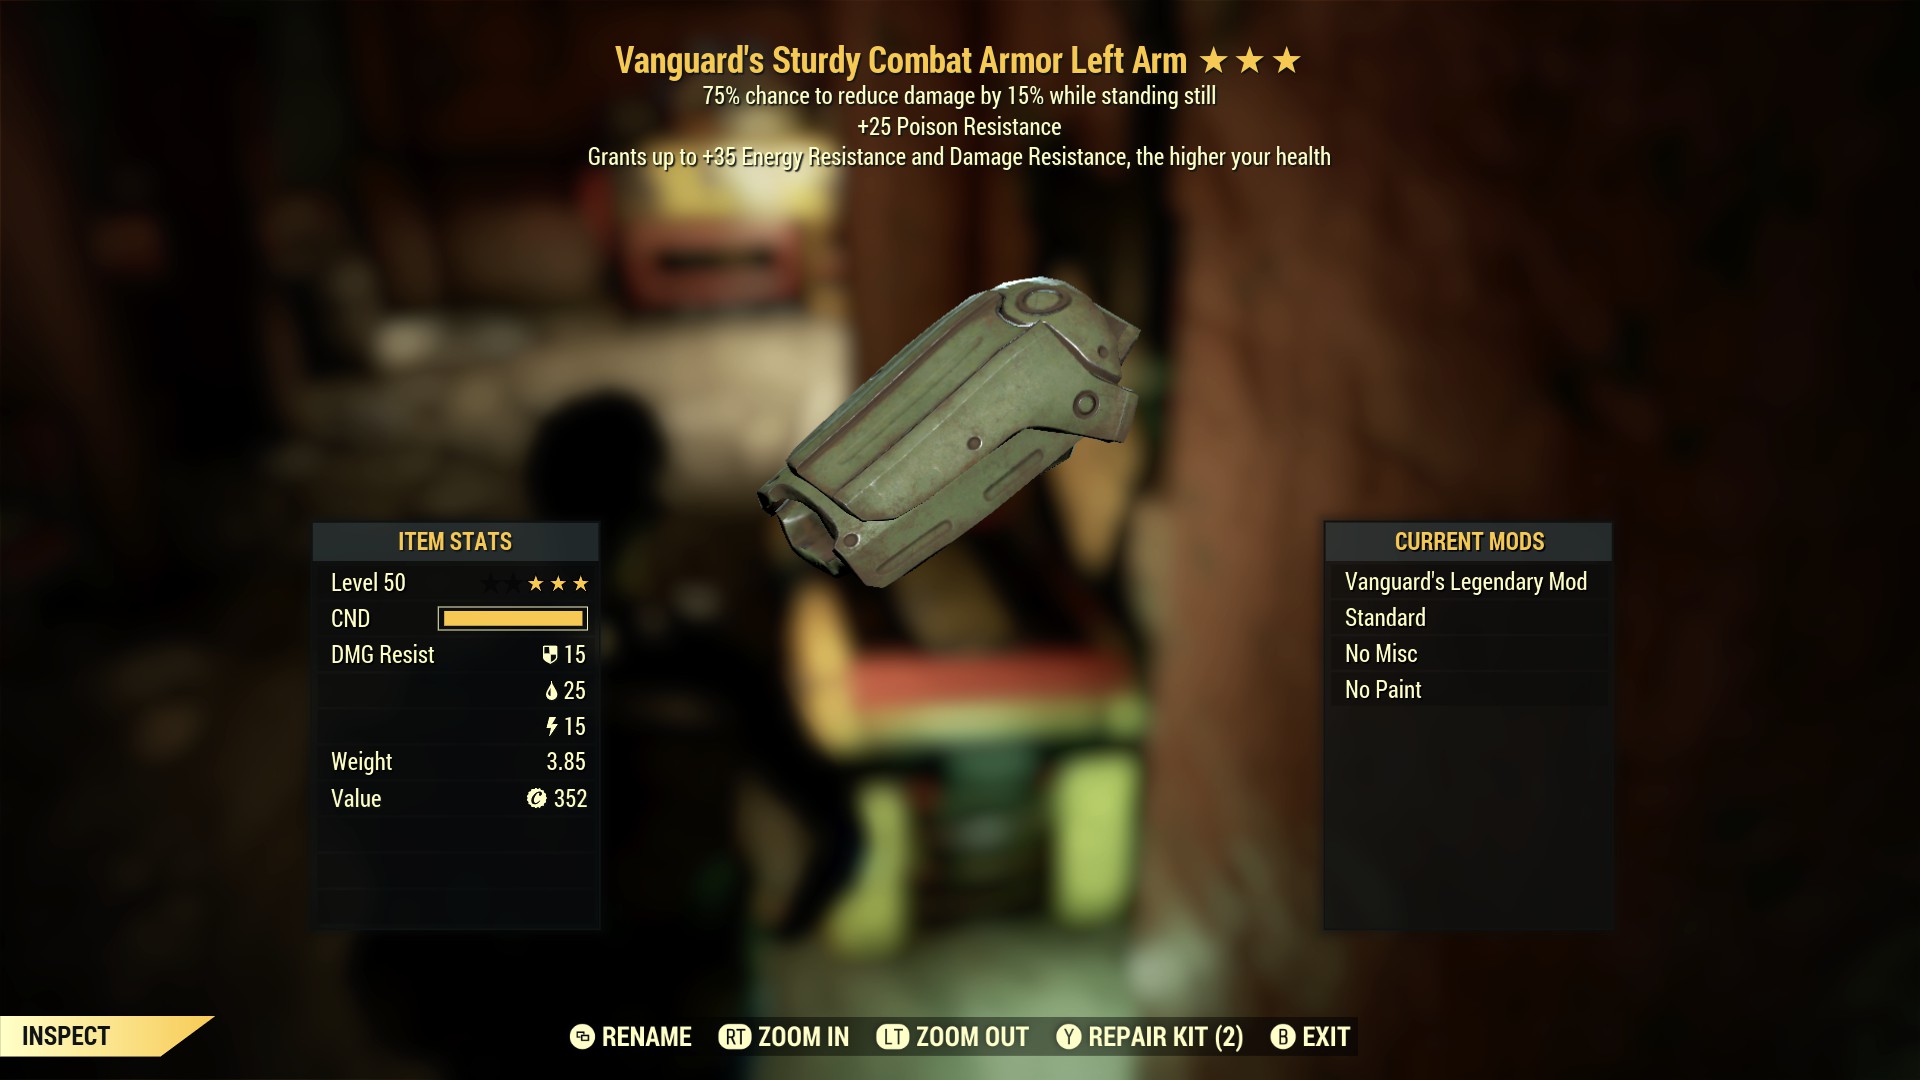 Vanguard's Sturdy Combat Armor Left Arm